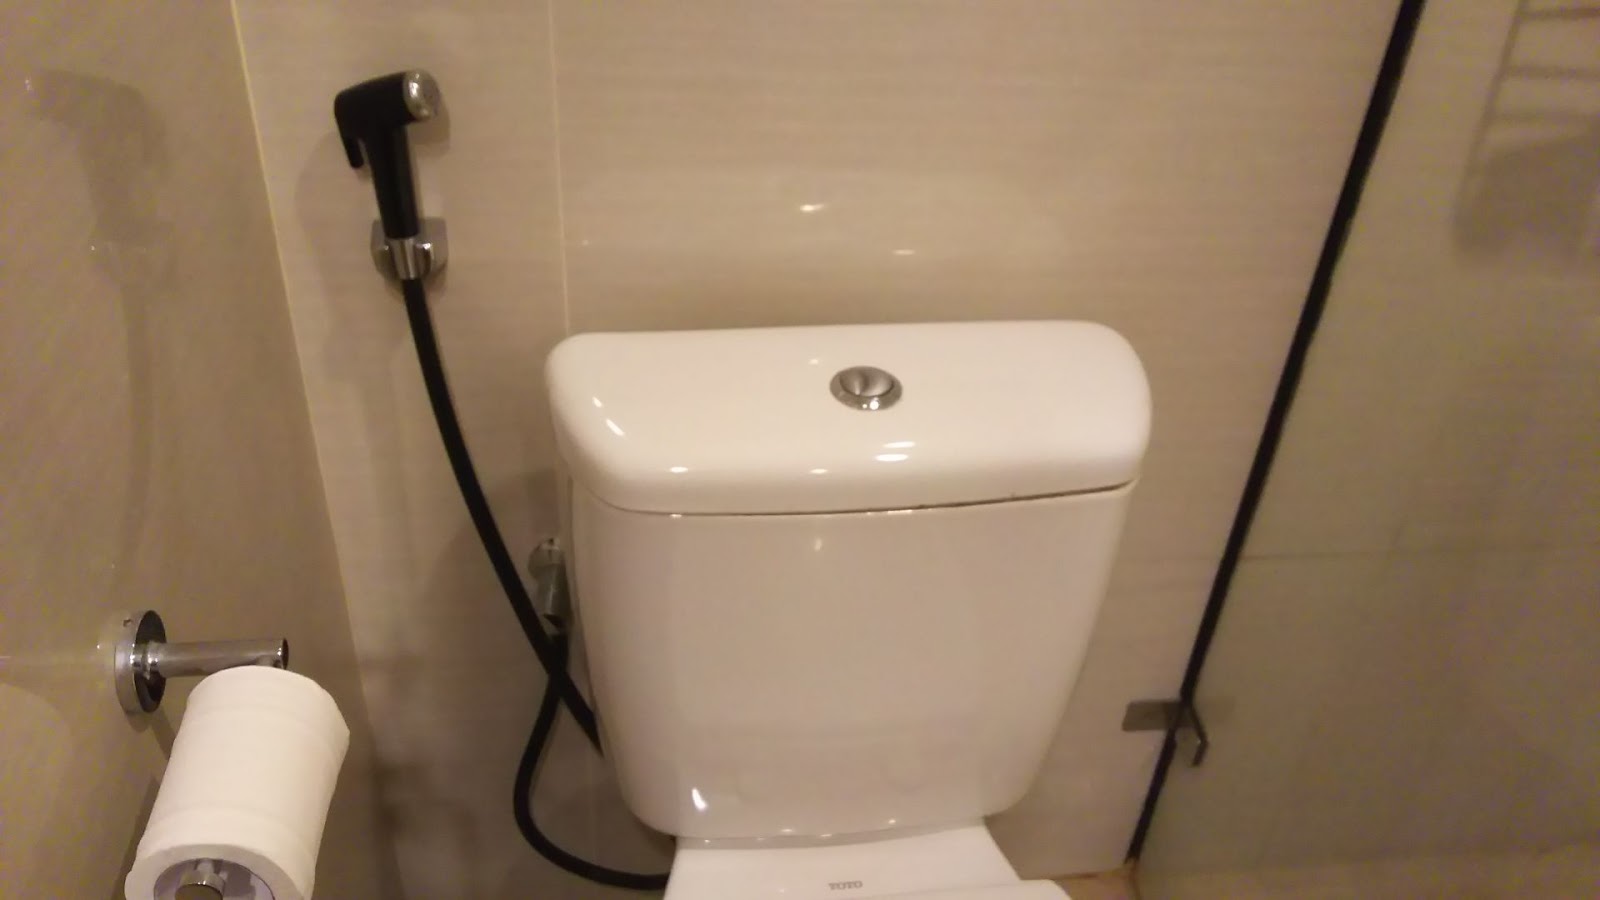 ジャカルタ トイレ事情 船と車 DIY Tomiのブログ